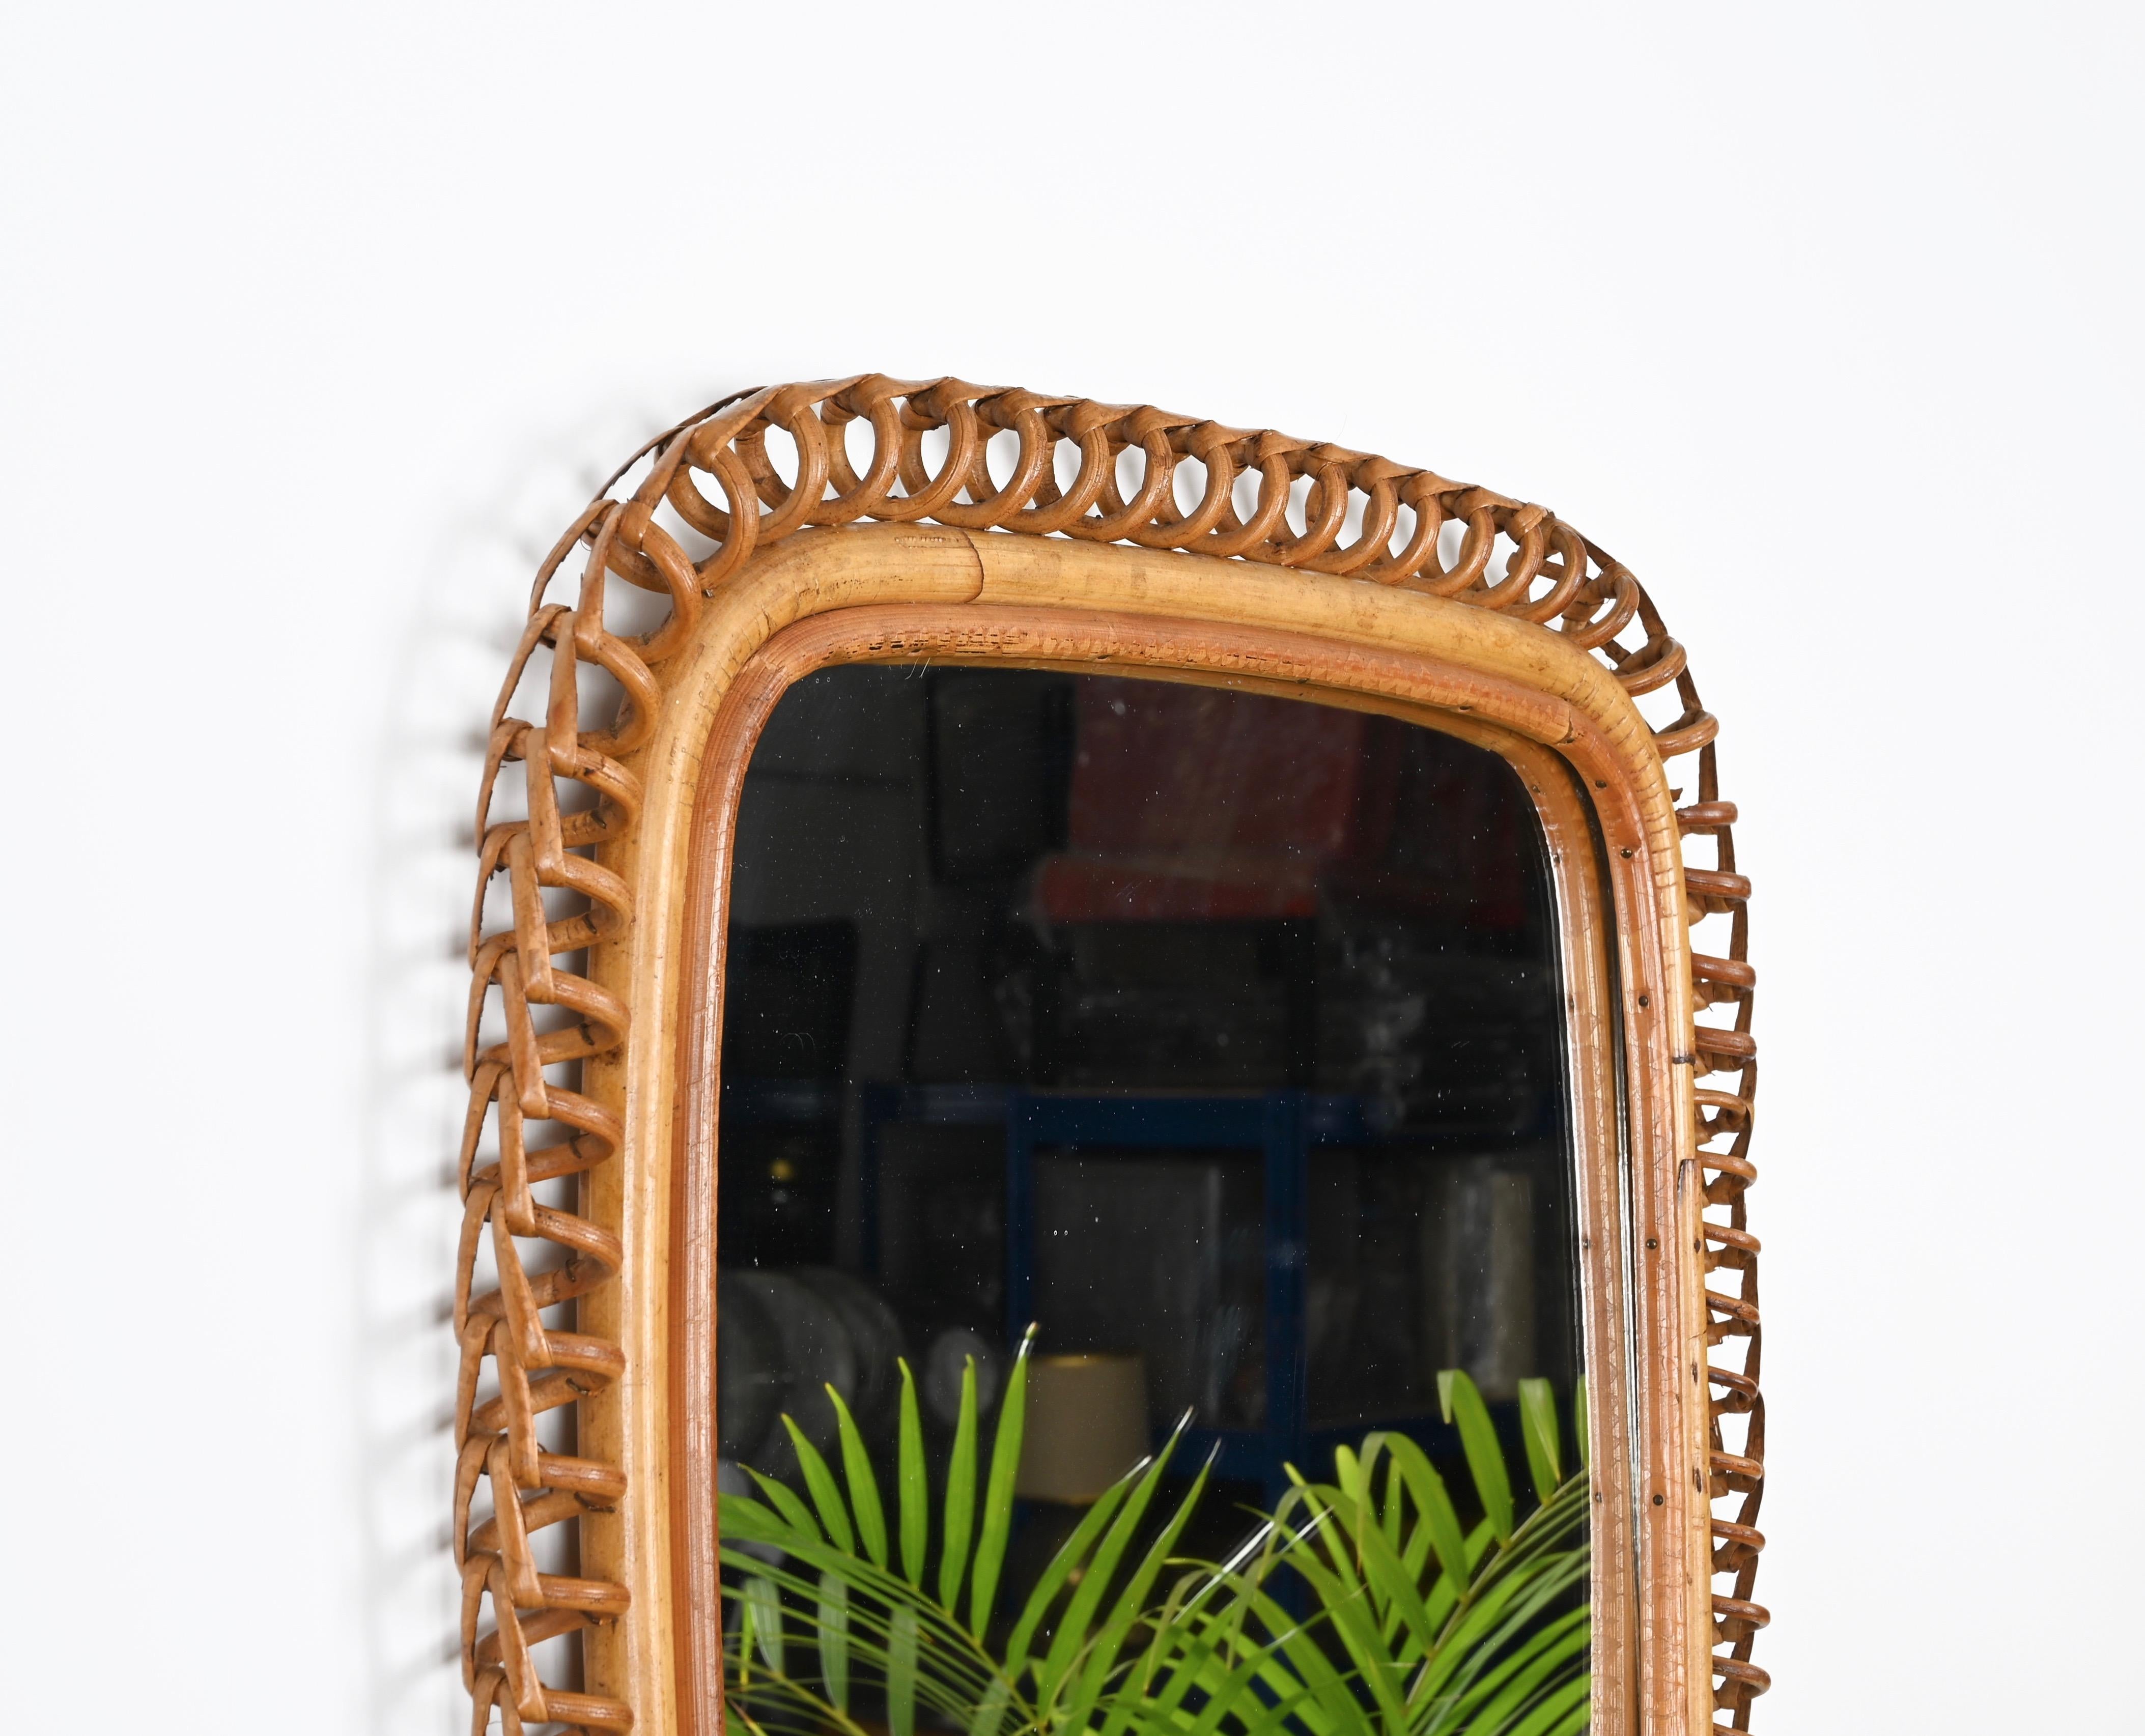 Italian Mid-Century French Riviera Rattan and Wicker Square Wall Mirror, Albini 1960s For Sale